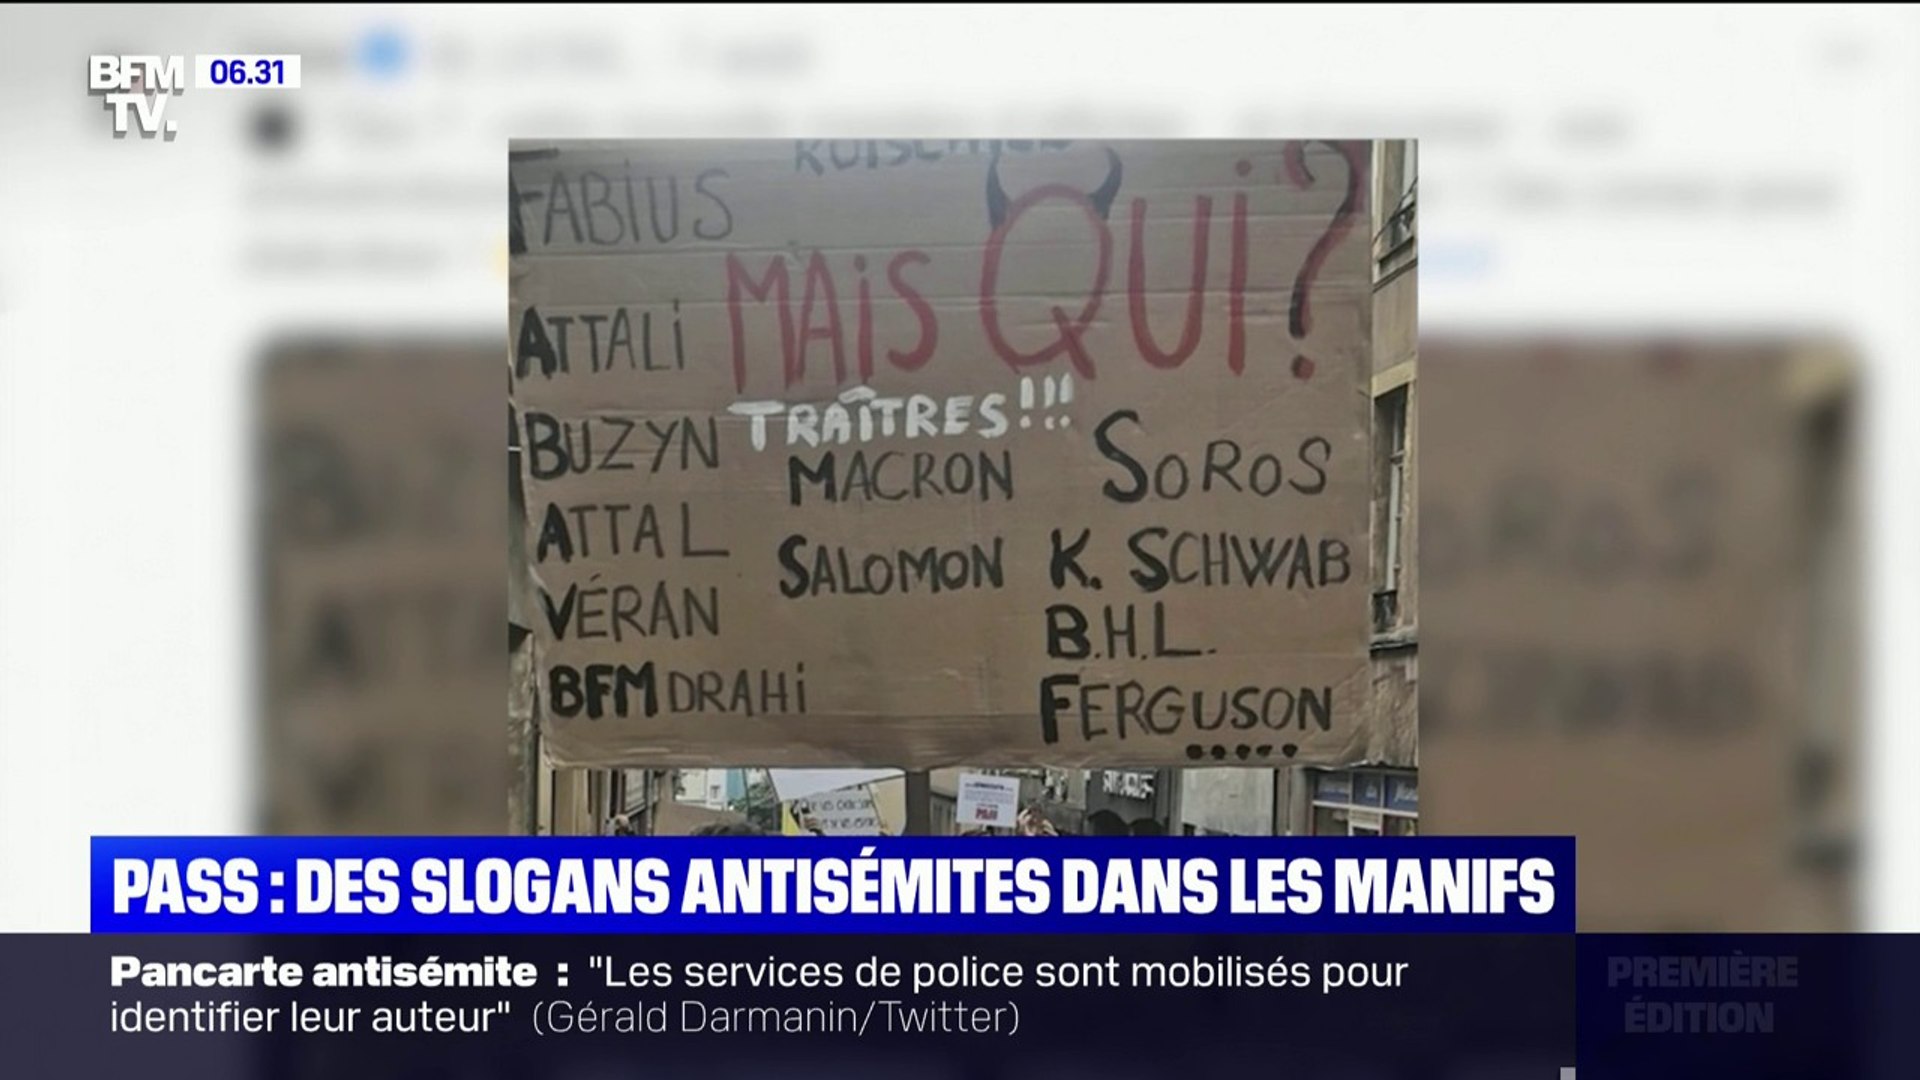 Une pancarte antisémite brandie lors d'une manifestations anti-pass  sanitaire à Metz ce week-end - Vidéo Dailymotion